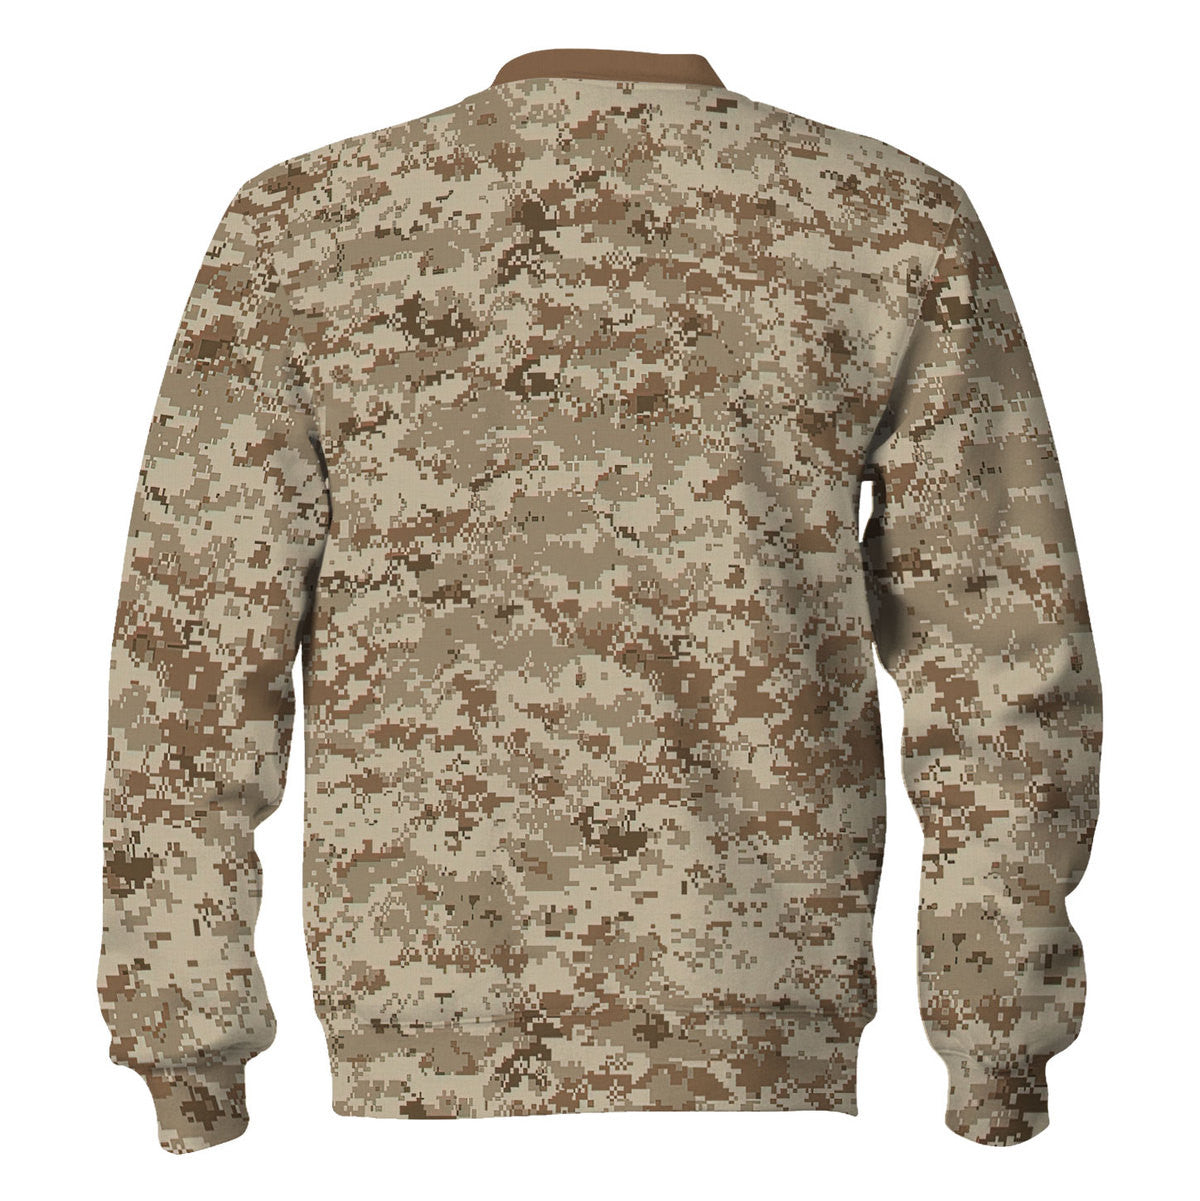 American Navy Working Uniform (NWU) Type II Camo Sweatshirt